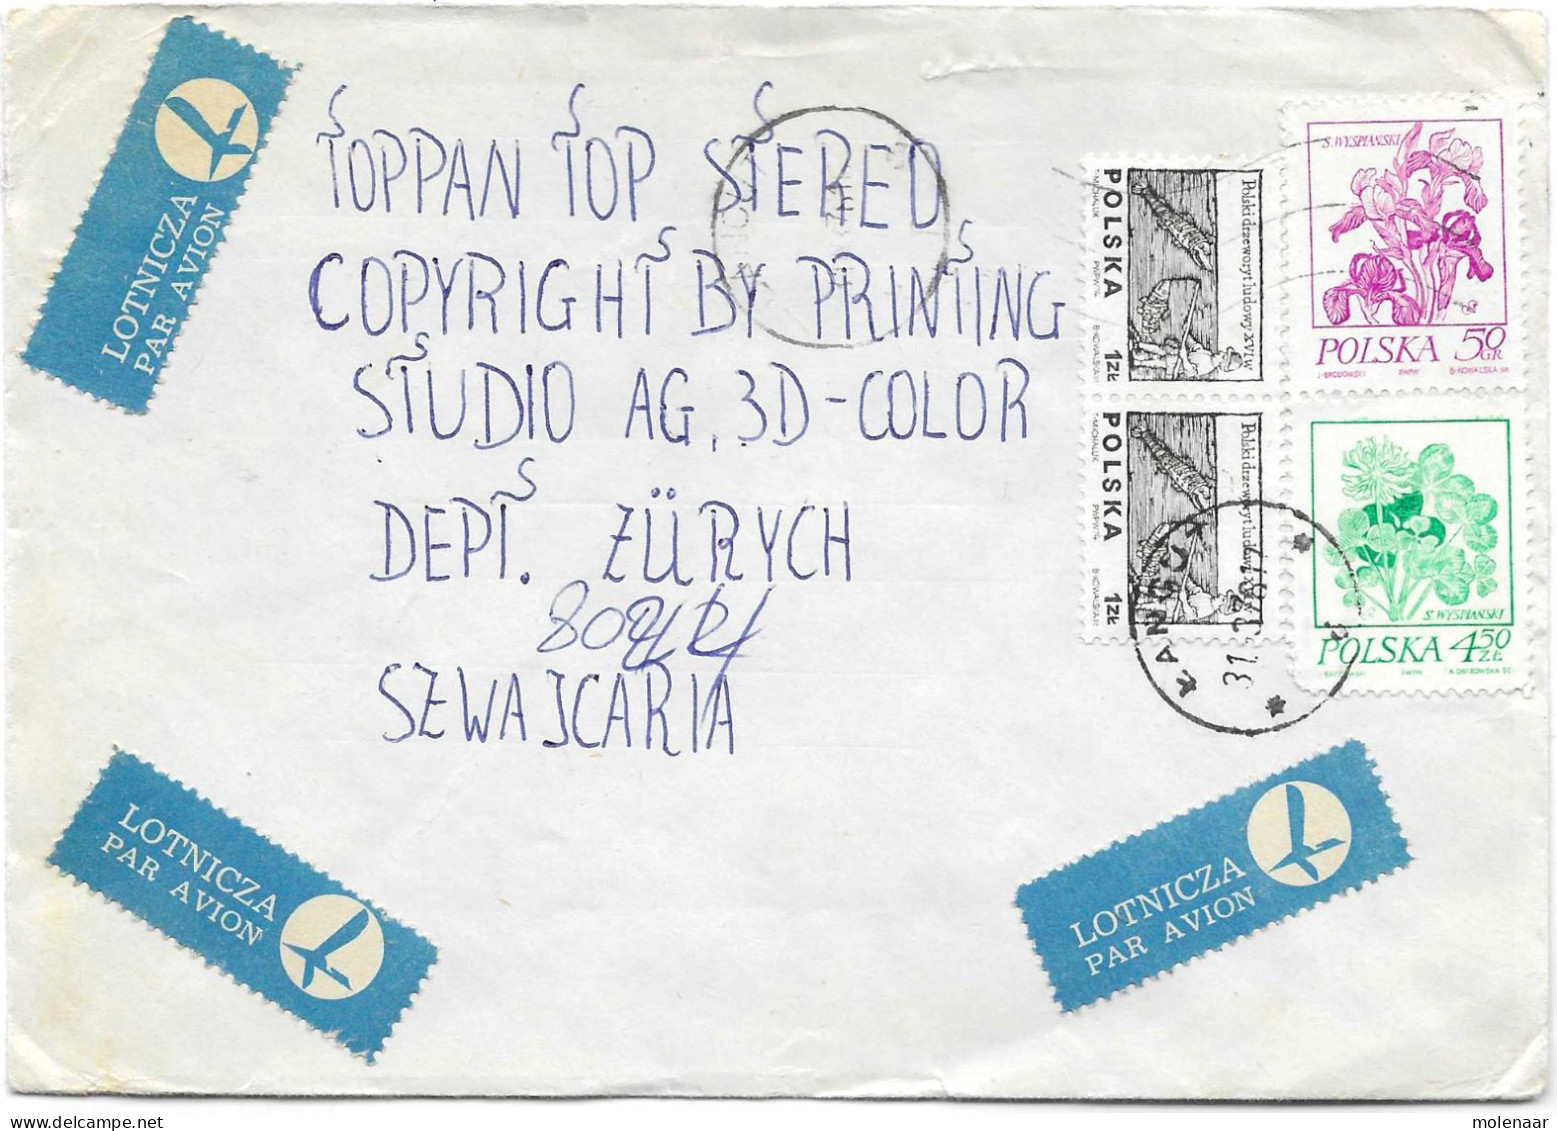 Postzegels > Europa > Polen > 1944-.... Republiek > 1971-80 > Brief Met 4 Postzegels (17132) - Lettres & Documents